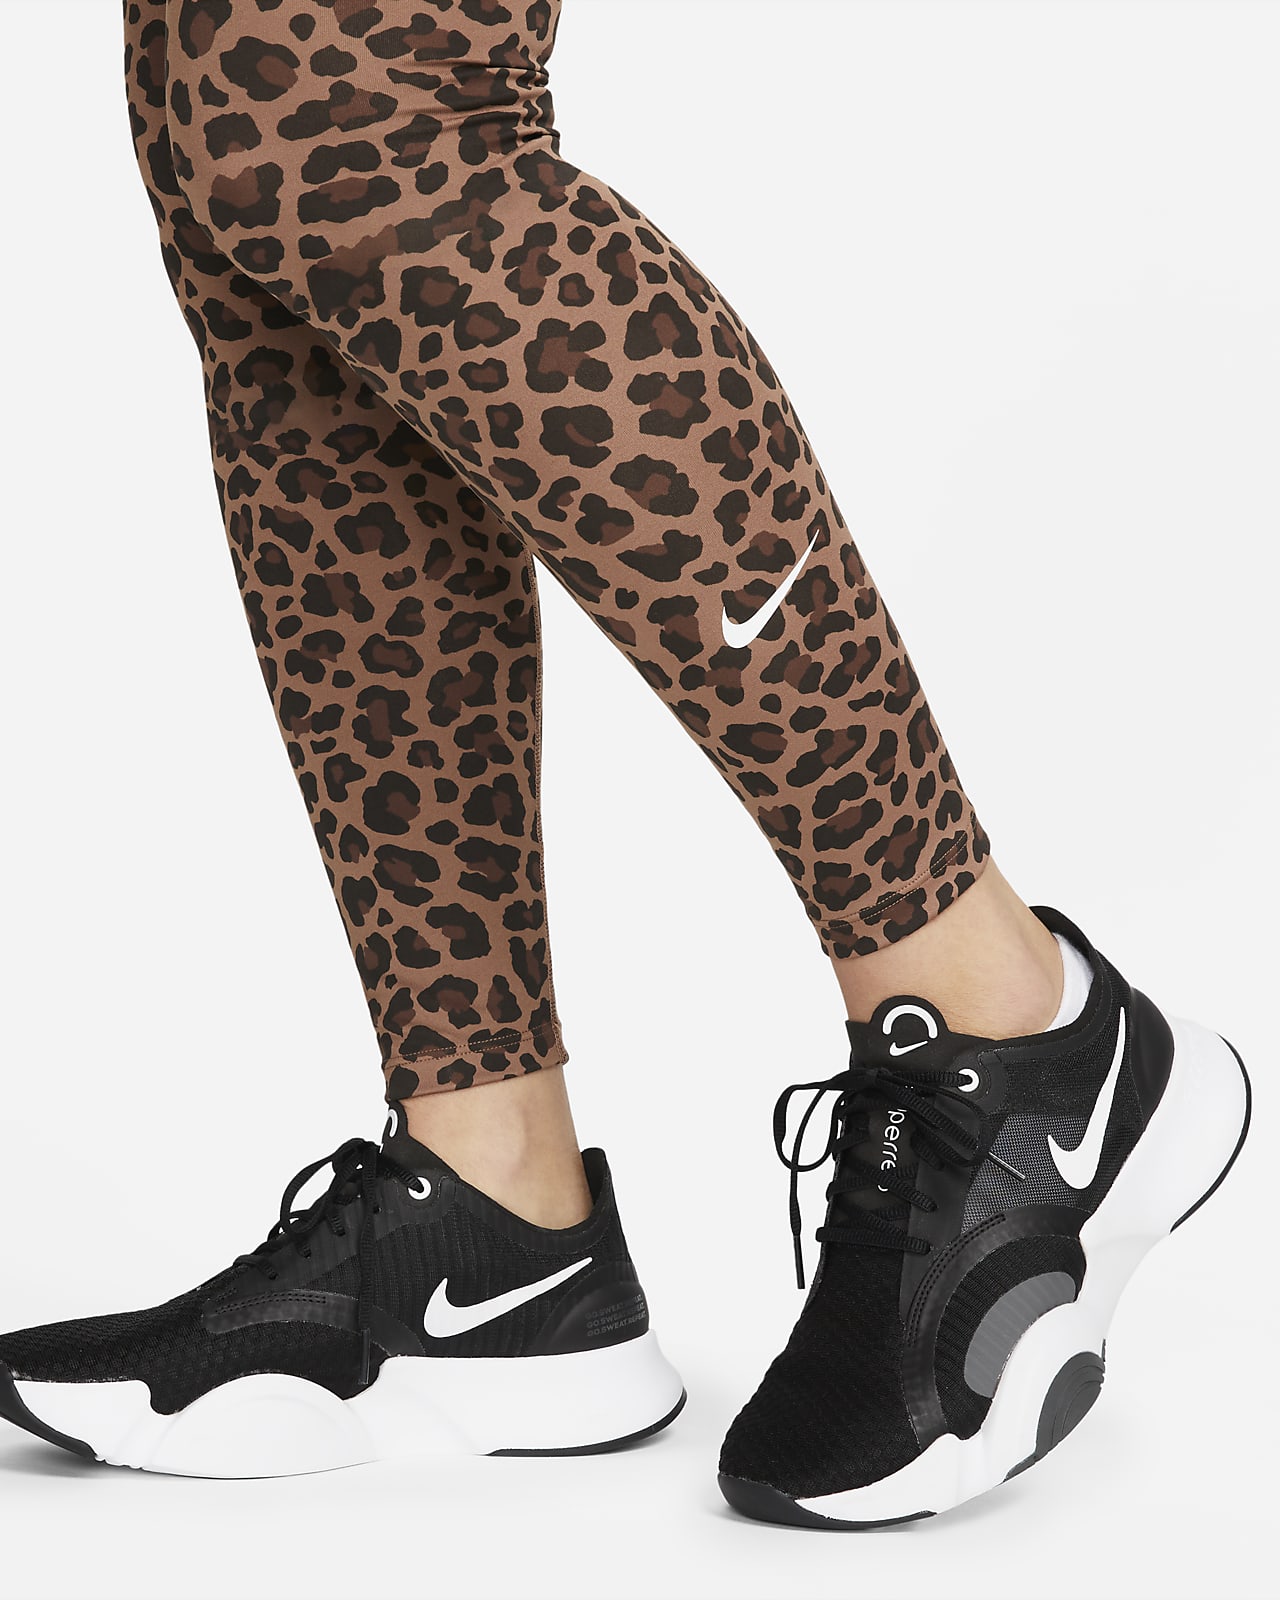 Nike One de talle alto con estampado de leopardo - Mujer Nike ES